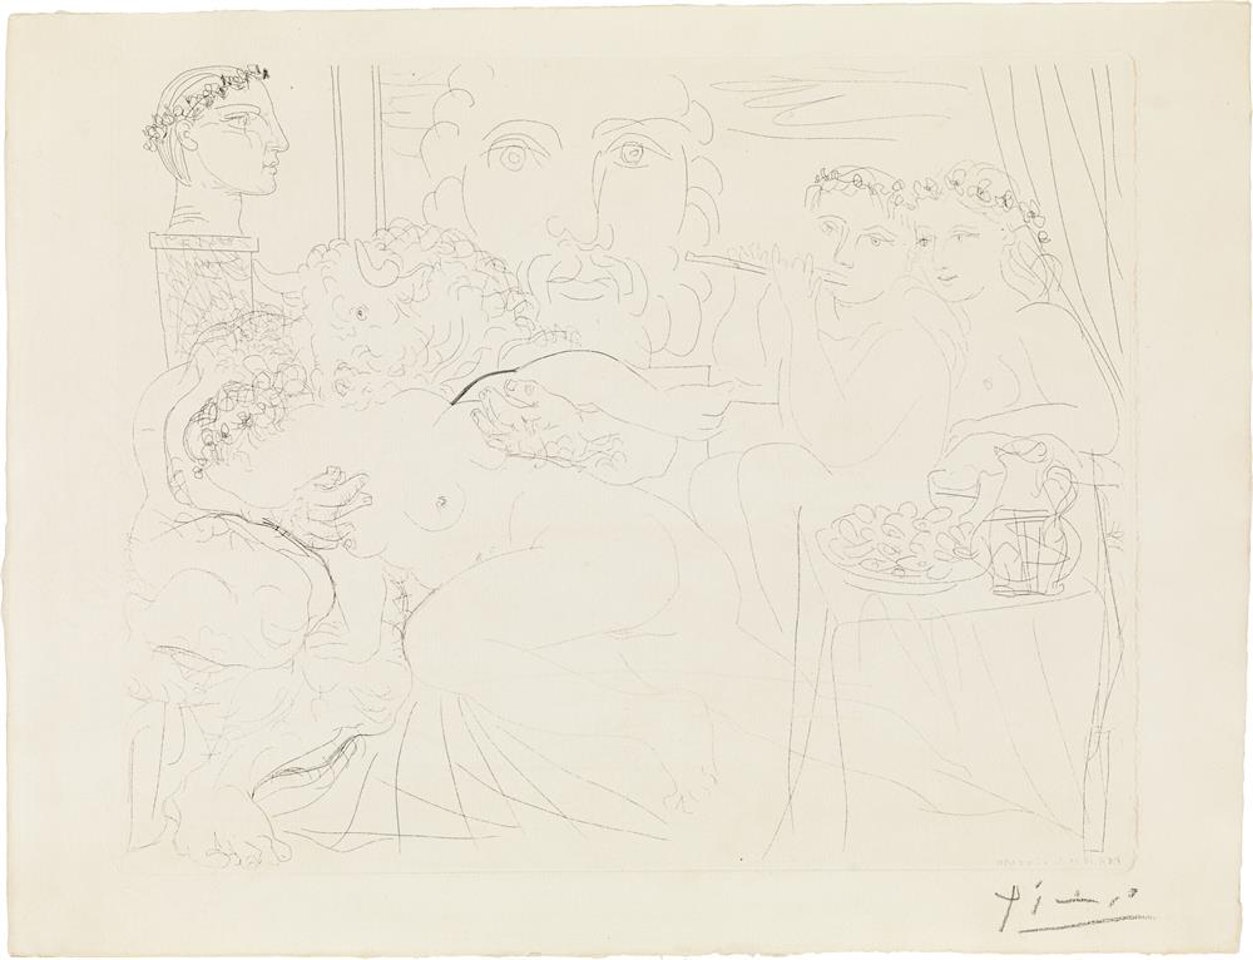 "Minotaure caressant une Femme", from "La Suite Vollard" by Pablo Picasso